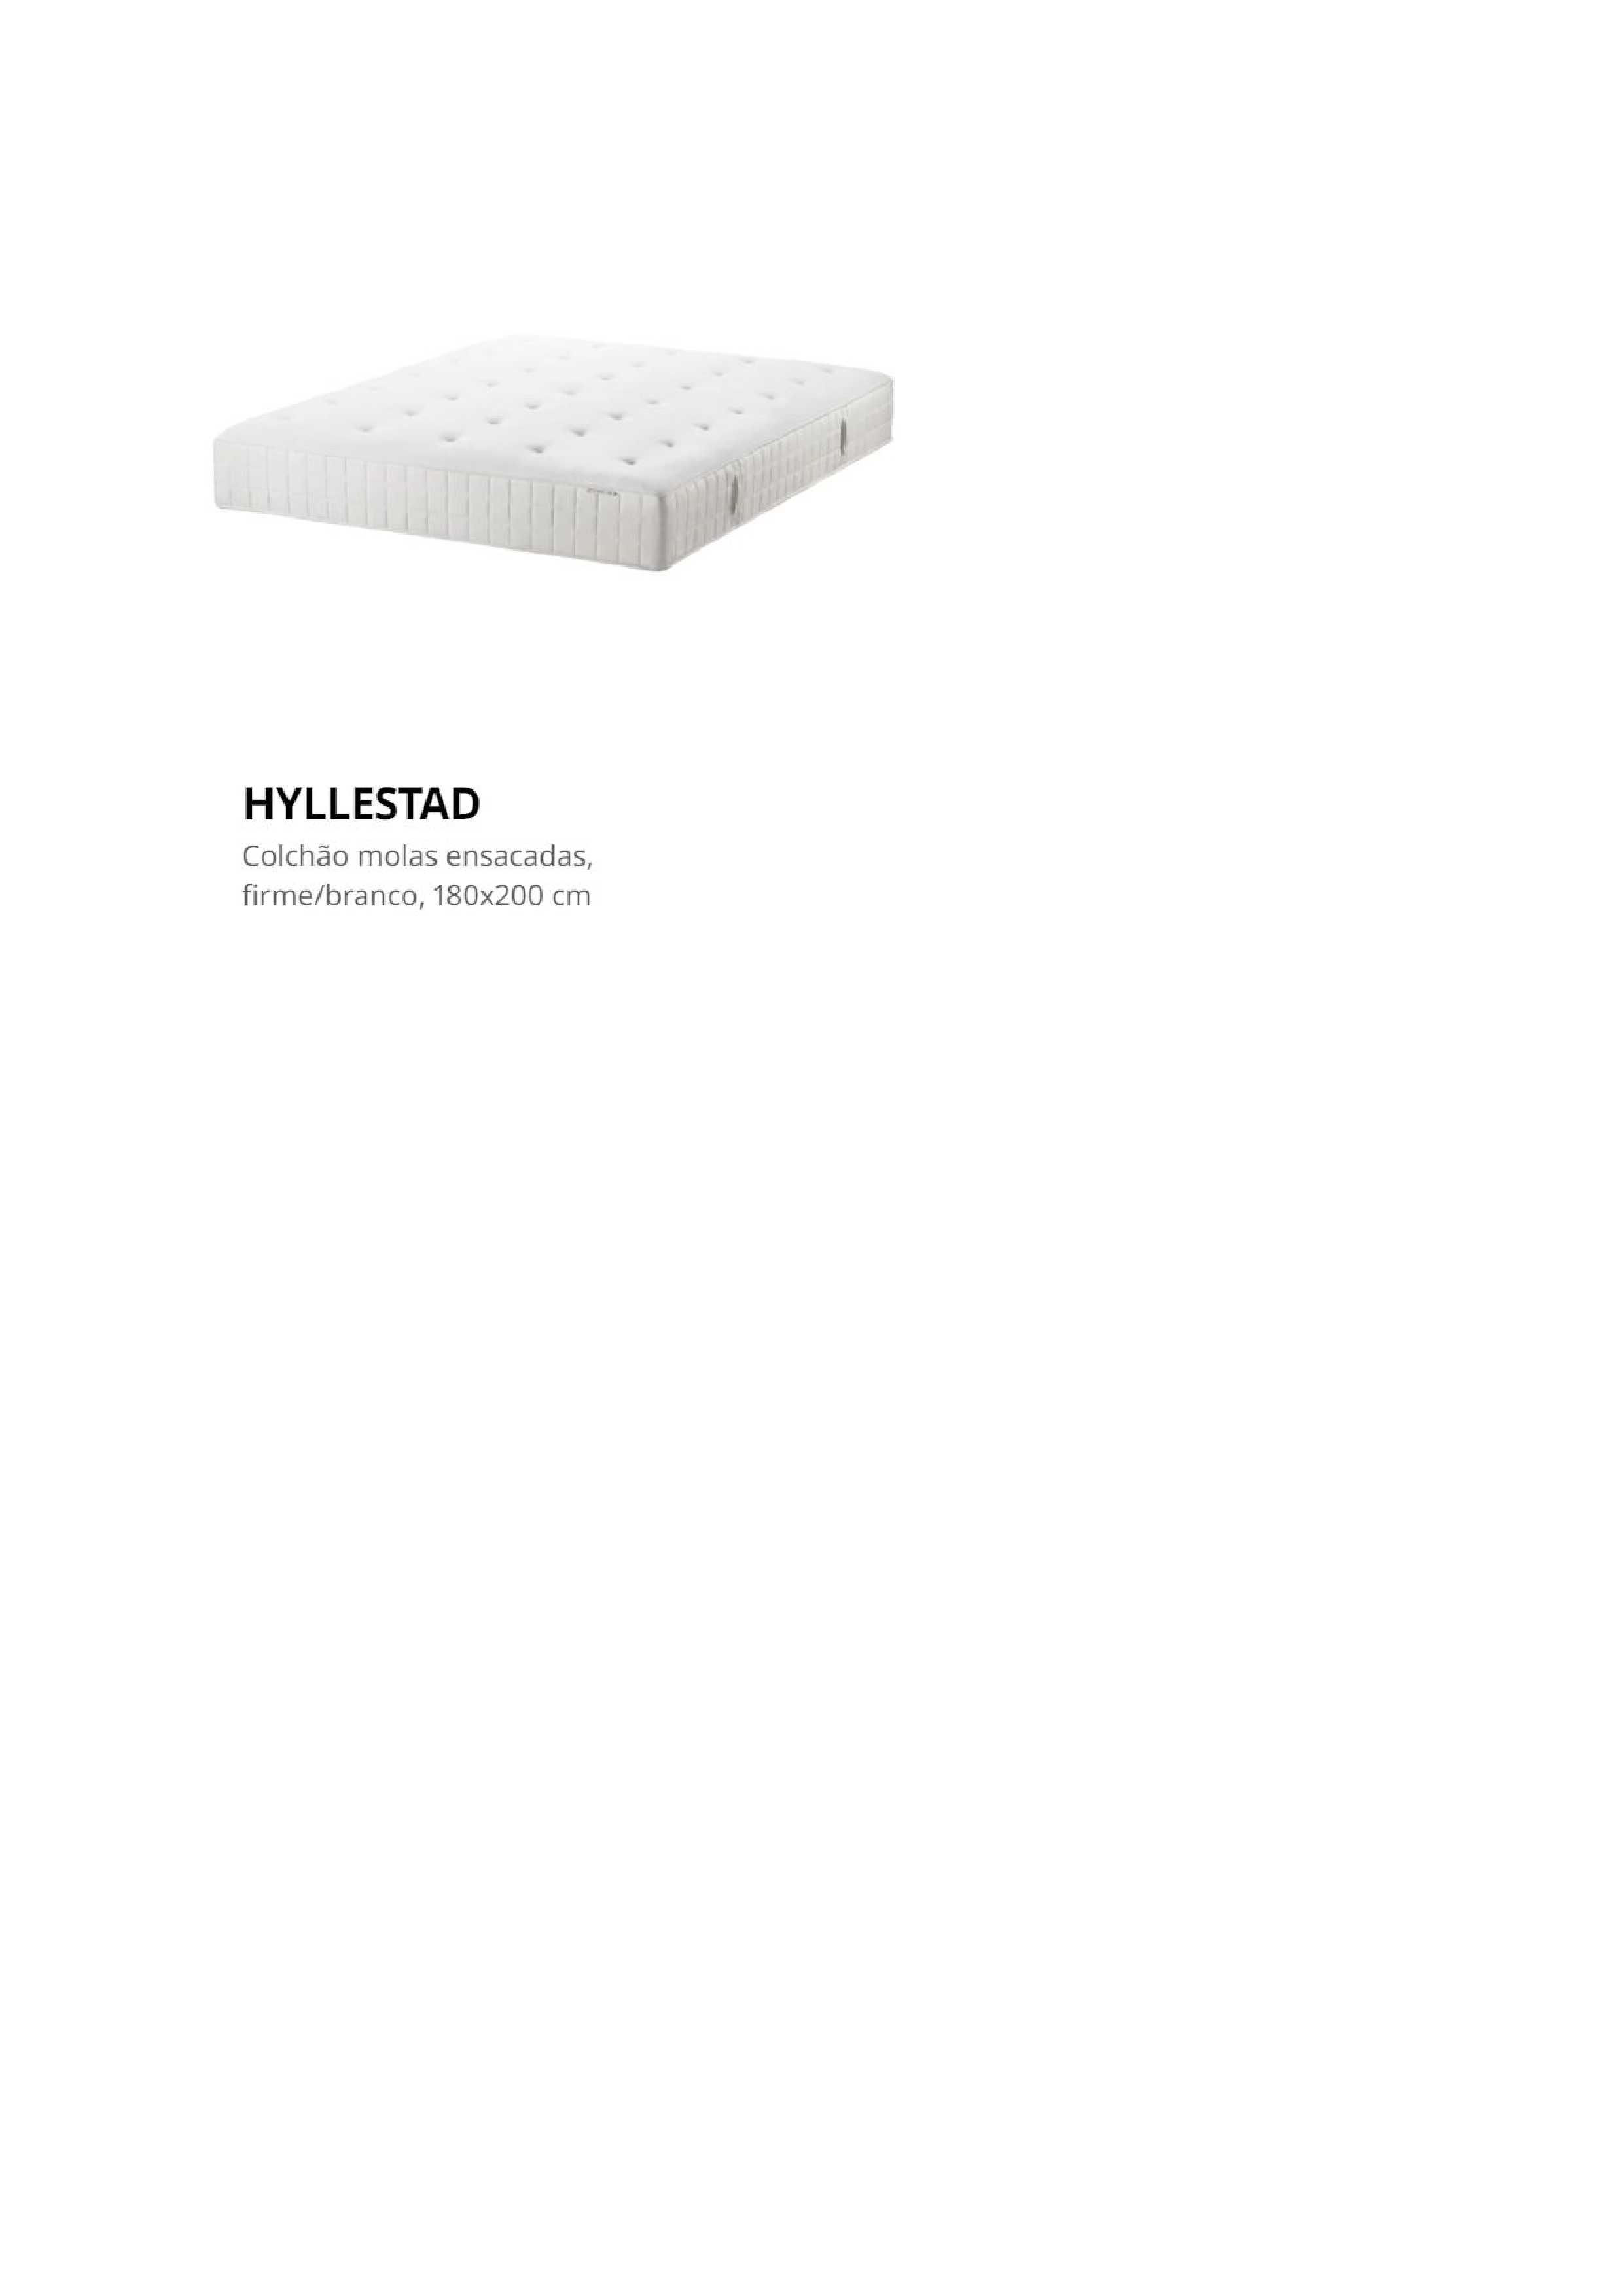 Colchão de cama com algum uso, modelo Ikea  Hyllestad 160x200cm